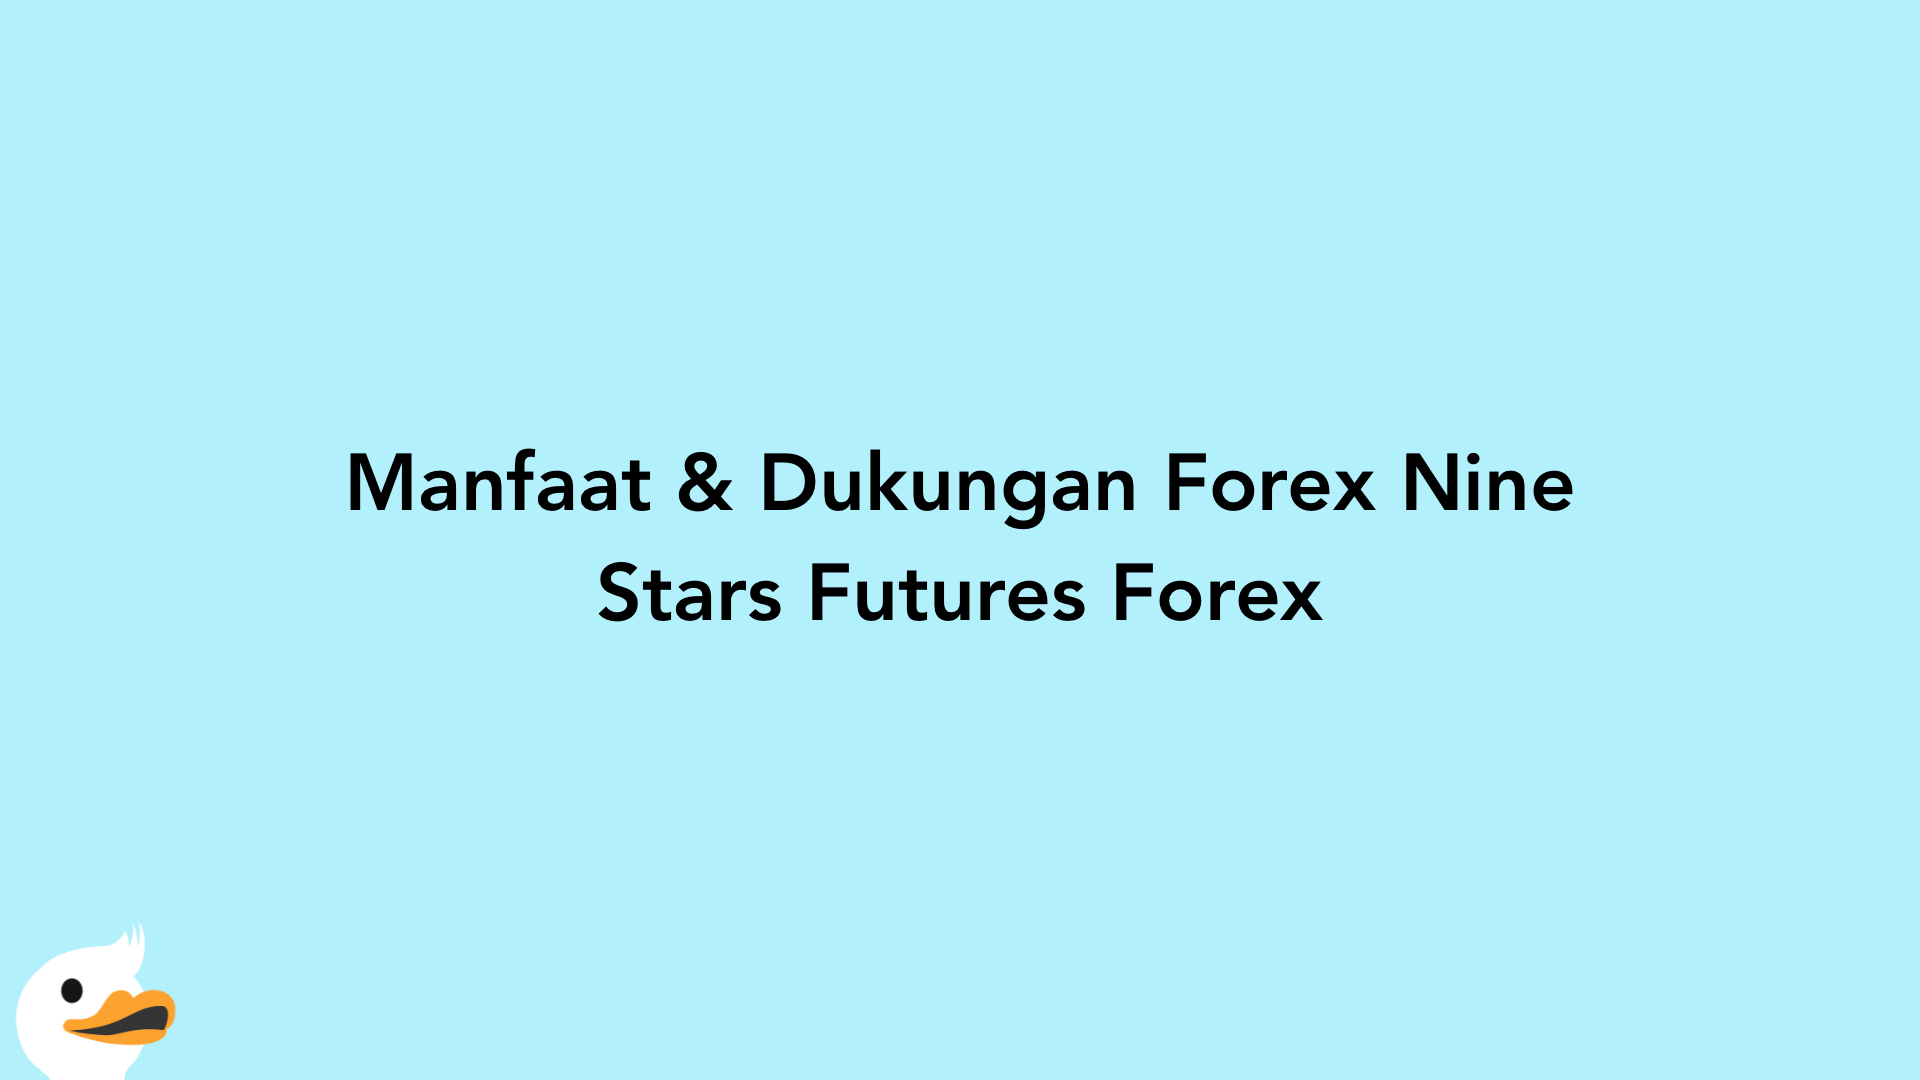 Manfaat & Dukungan Forex Nine Stars Futures Forex